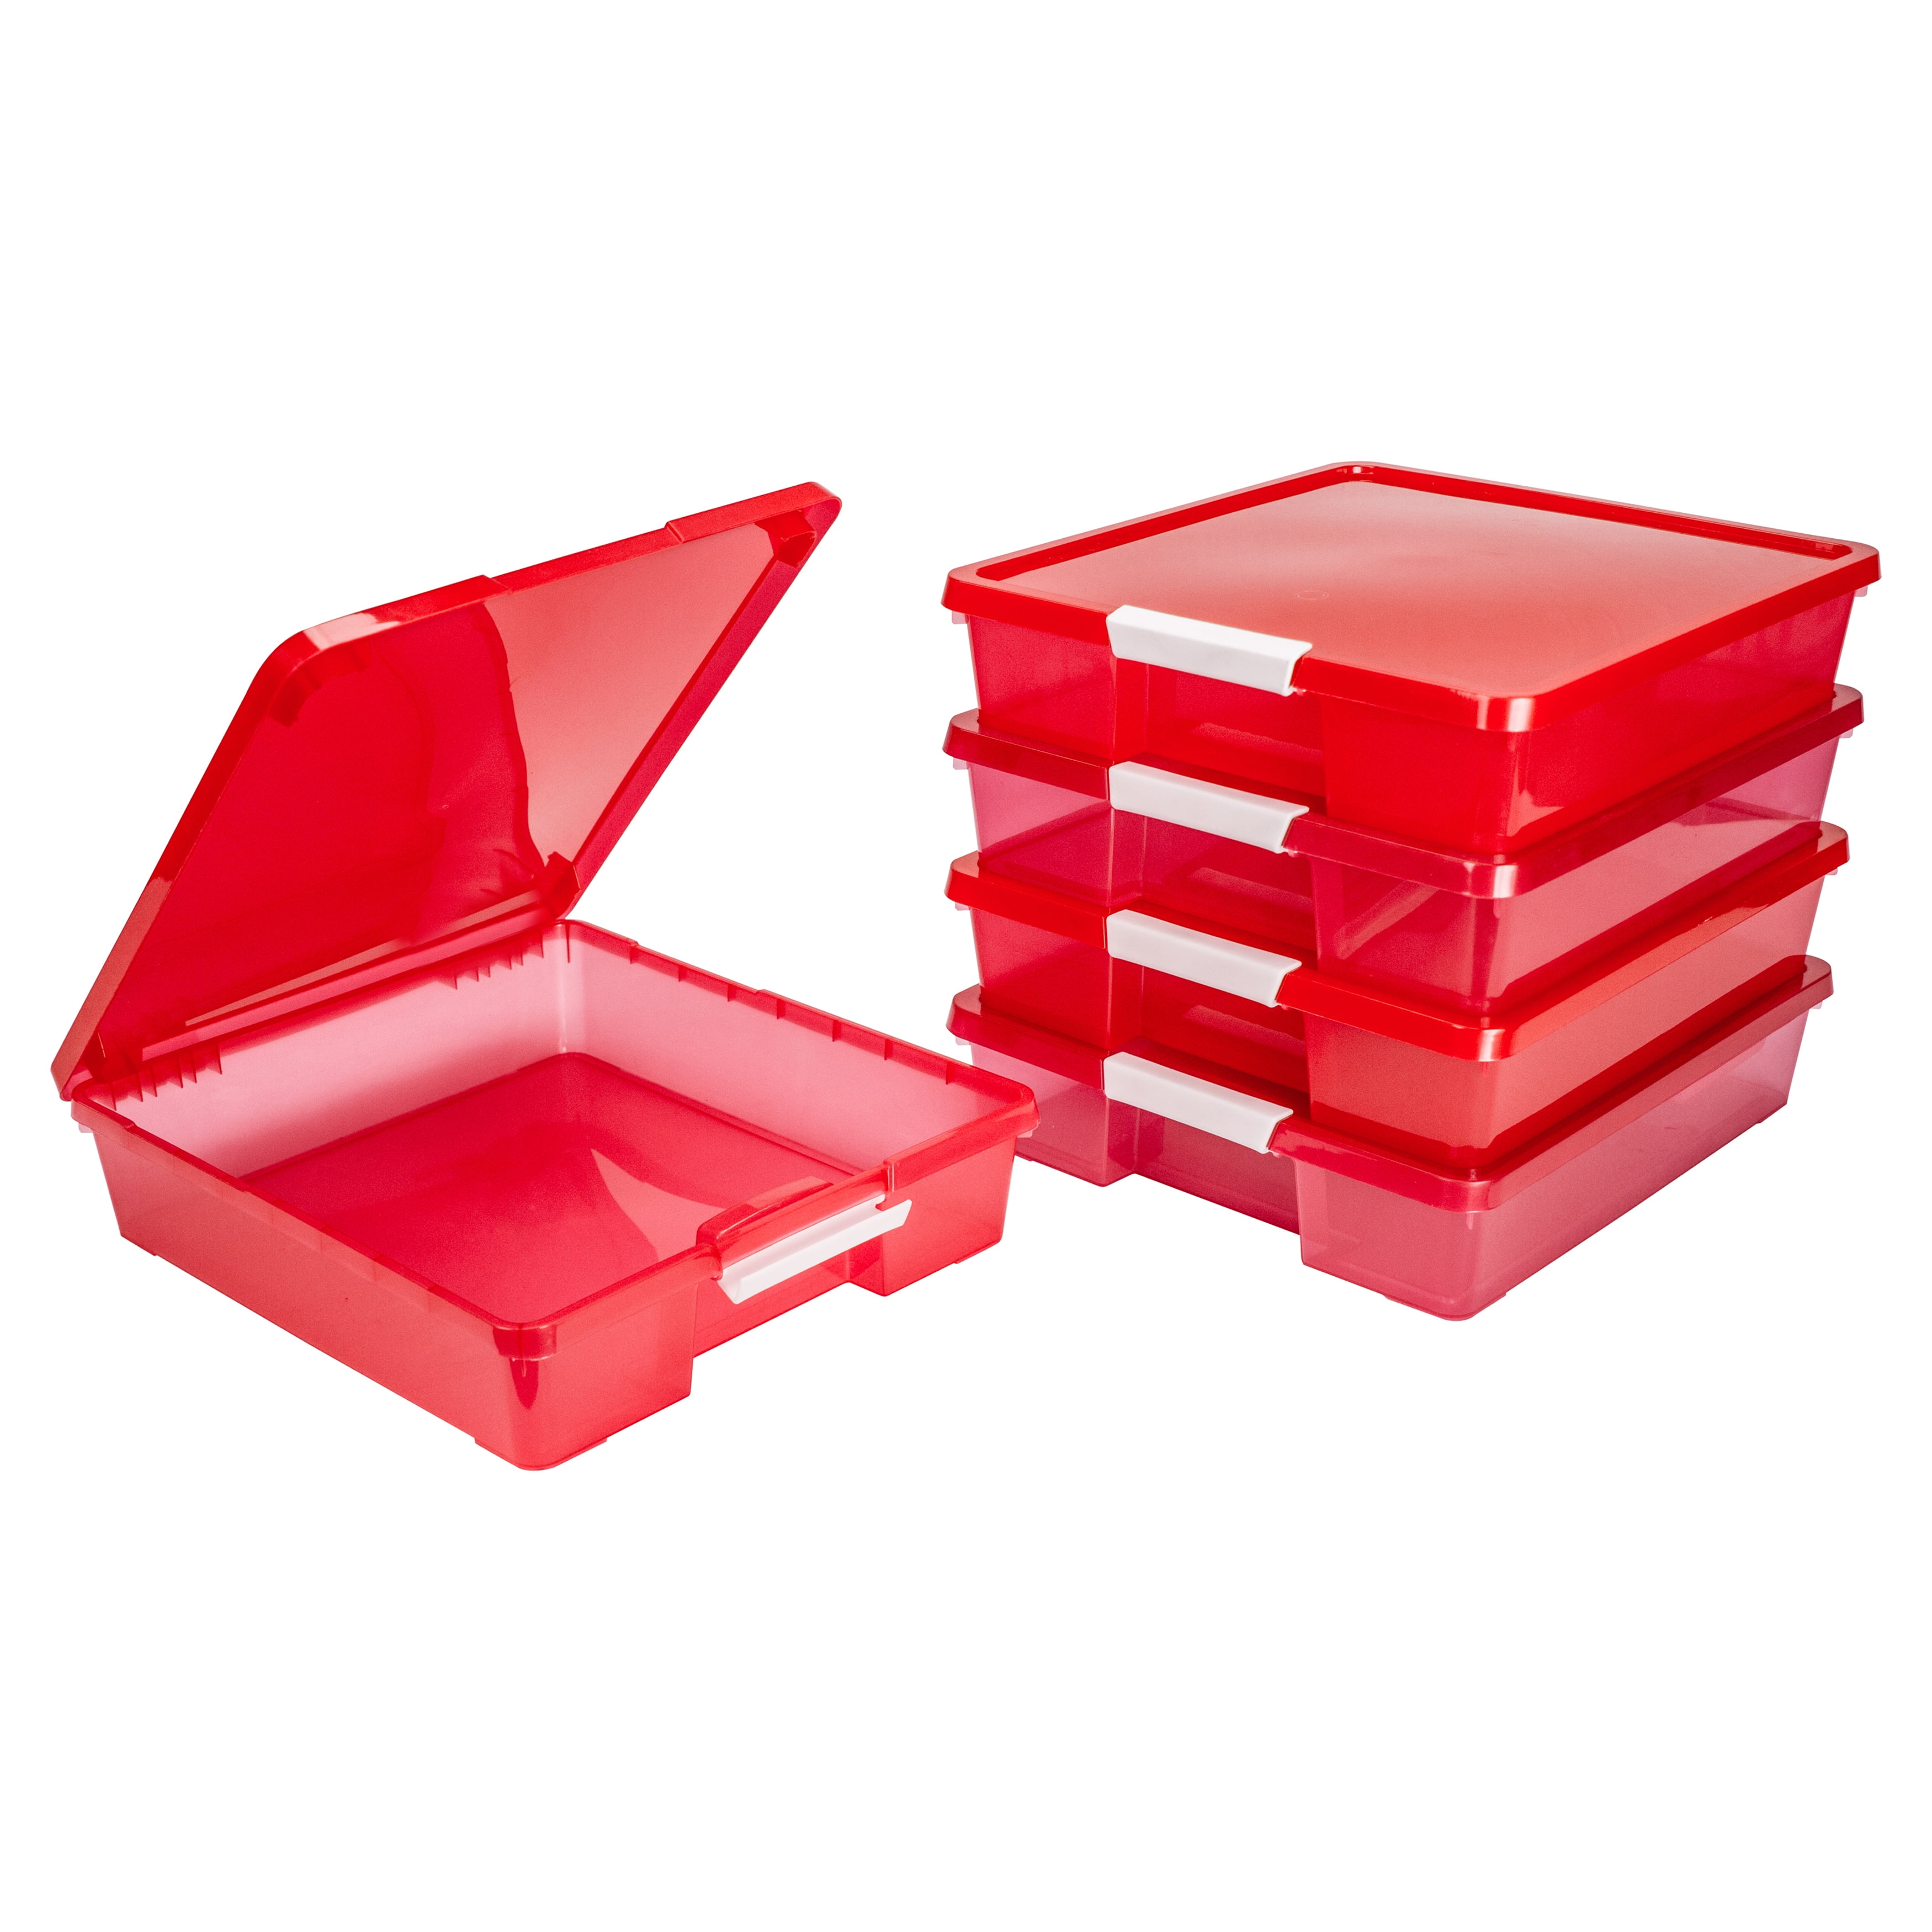  Scrapbook Paper Storage Organizer, 12x12 Paper Storage  Organizer, Scrapbook Storage Bin for 12 x 12 Paper- 2 Pack